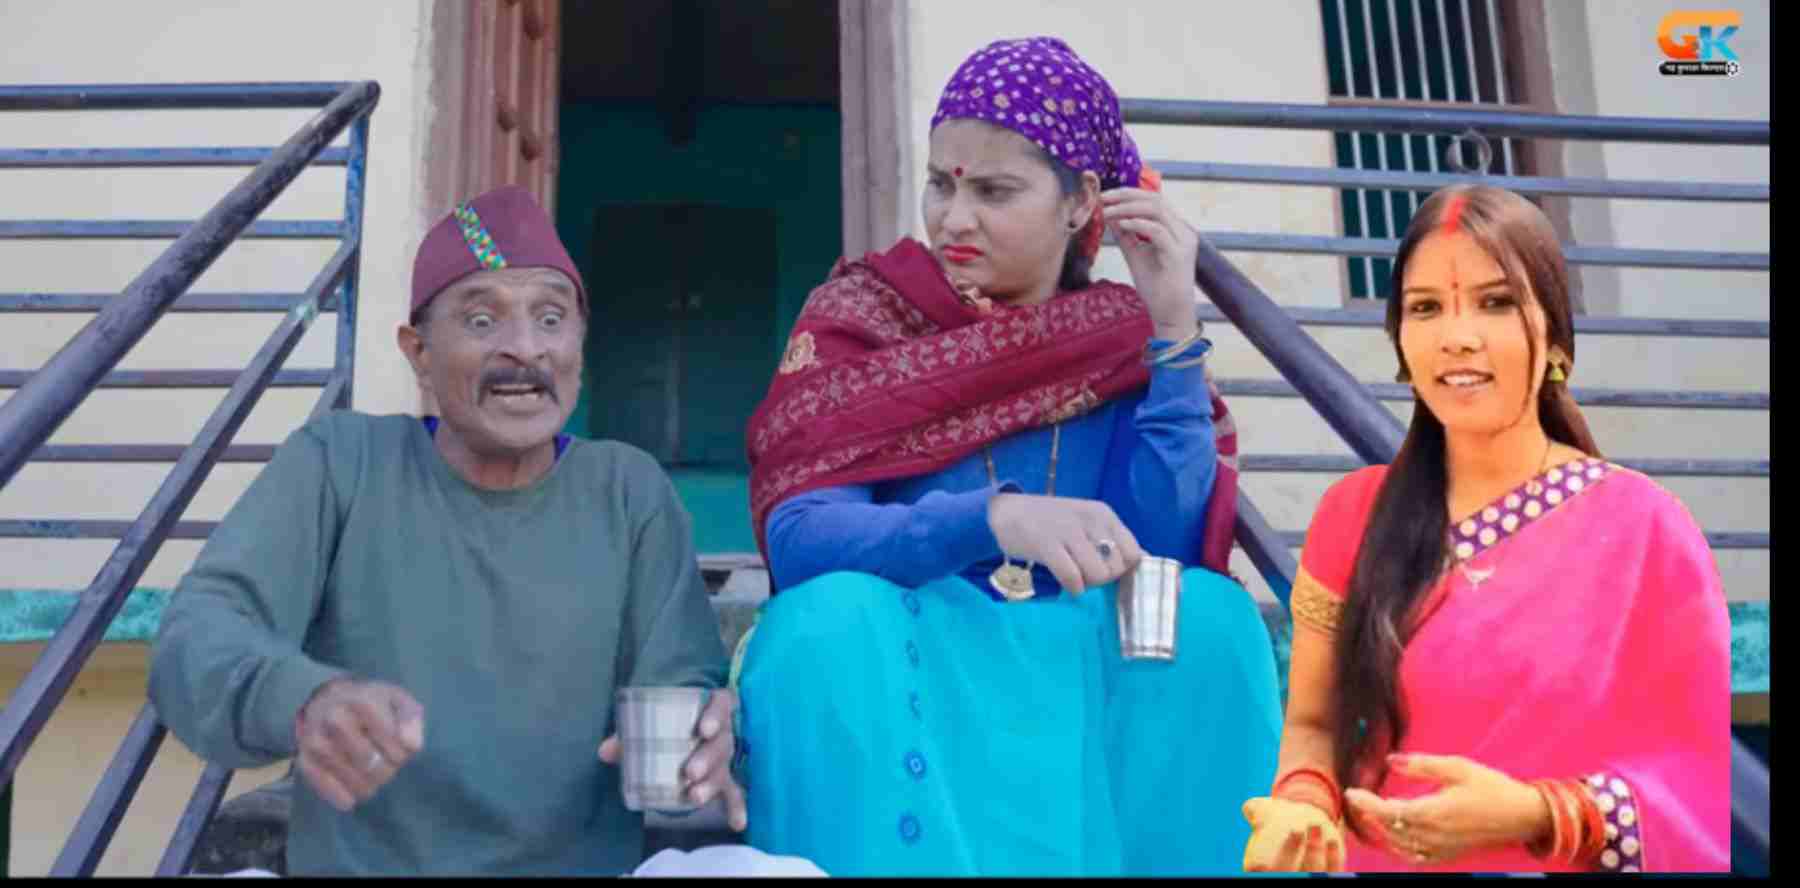 Uttarakhand: Mamta Arya and Mahesh Kumar new kumaoni song 'Bwari Biji Insta Reel Mein' released. Mamta Arya new song